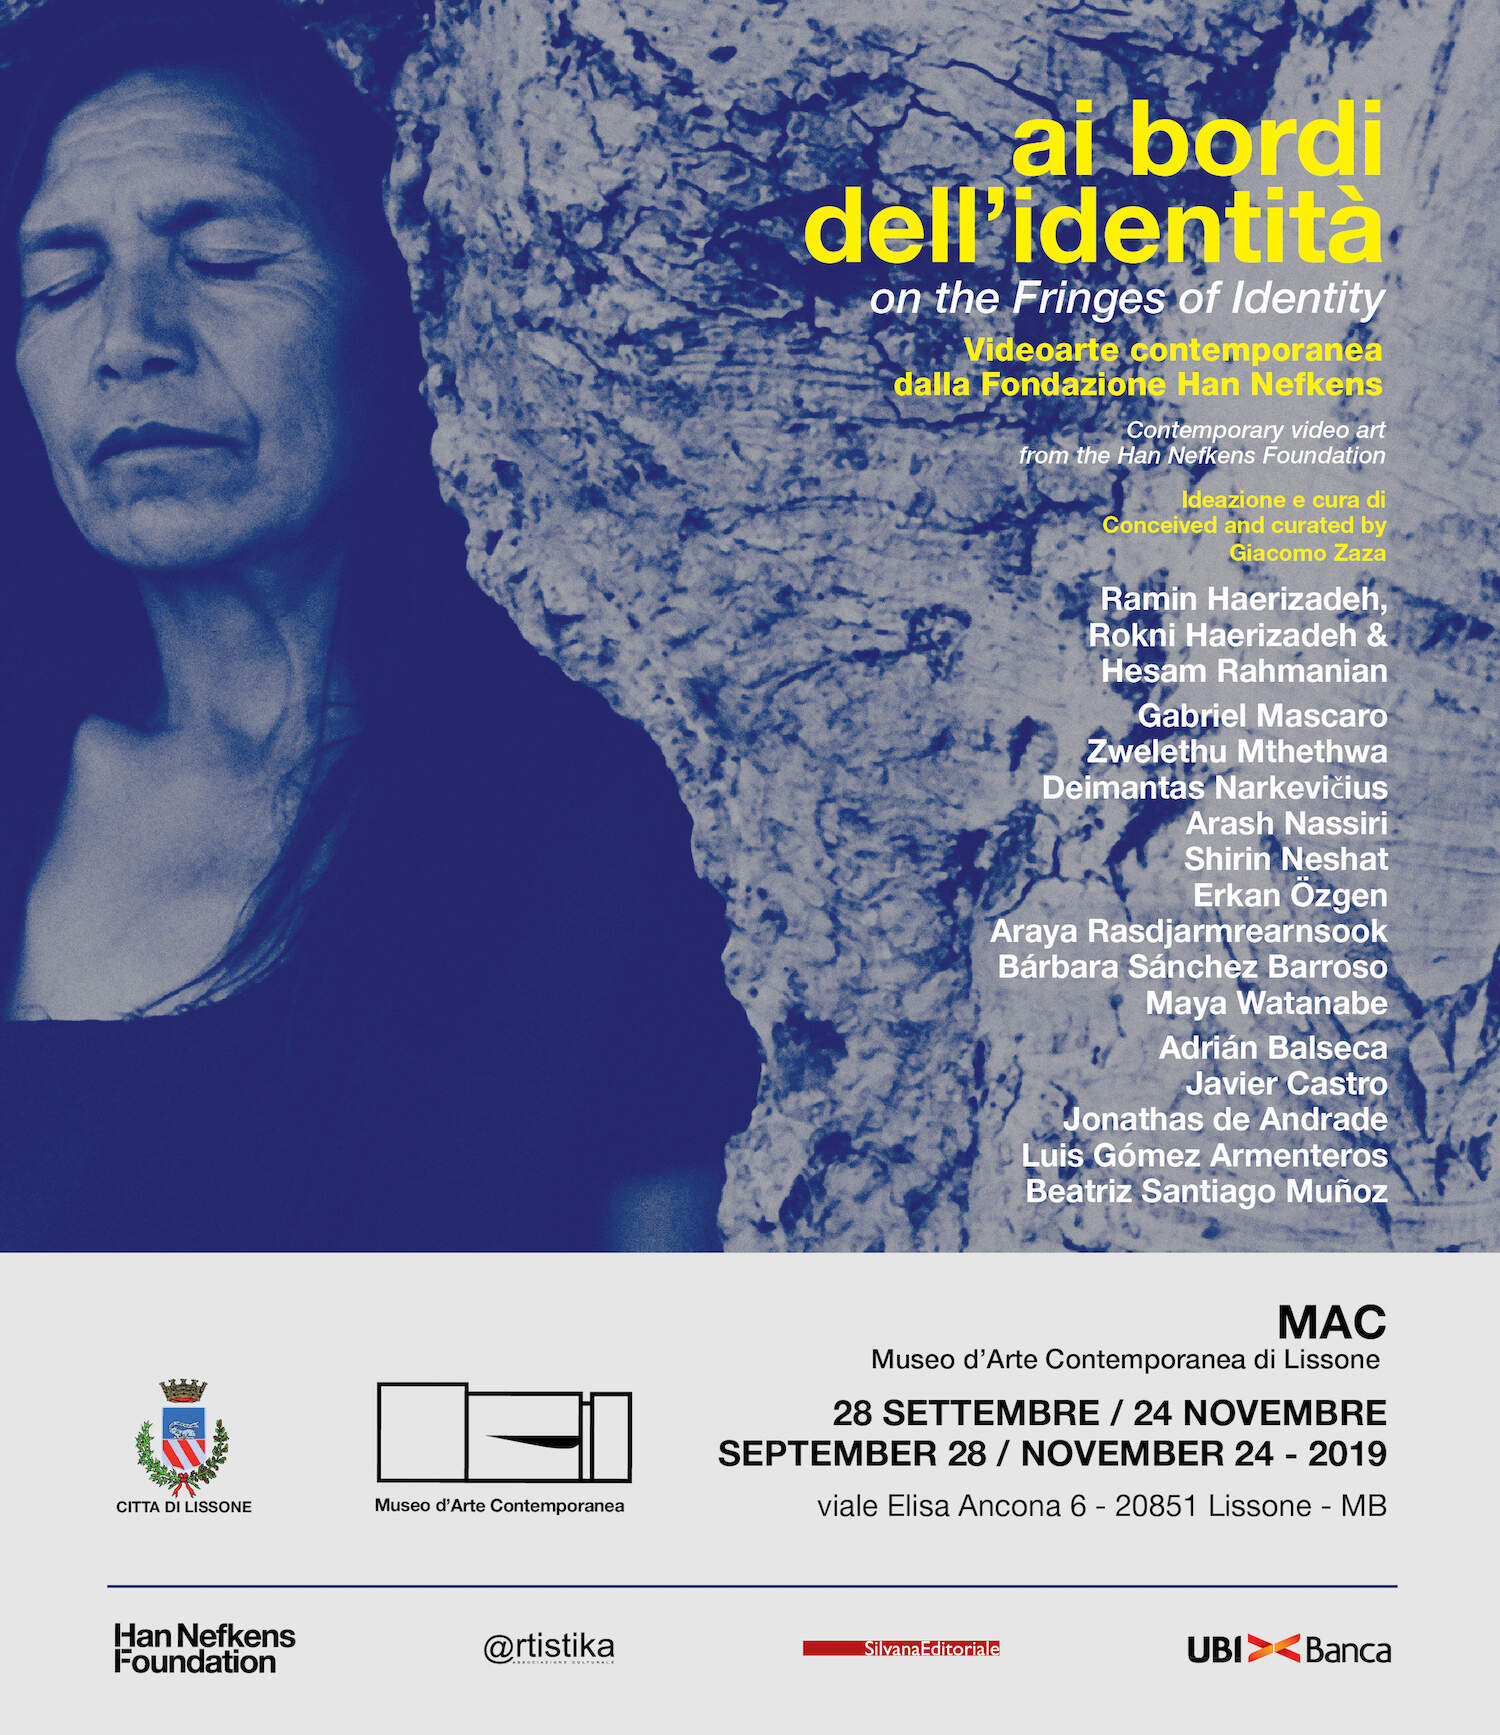 Mostra itinerante a cura di Giacomo Zaza: MAC di Lissone 28/09/19 - MAST di Lecce 20/06/19